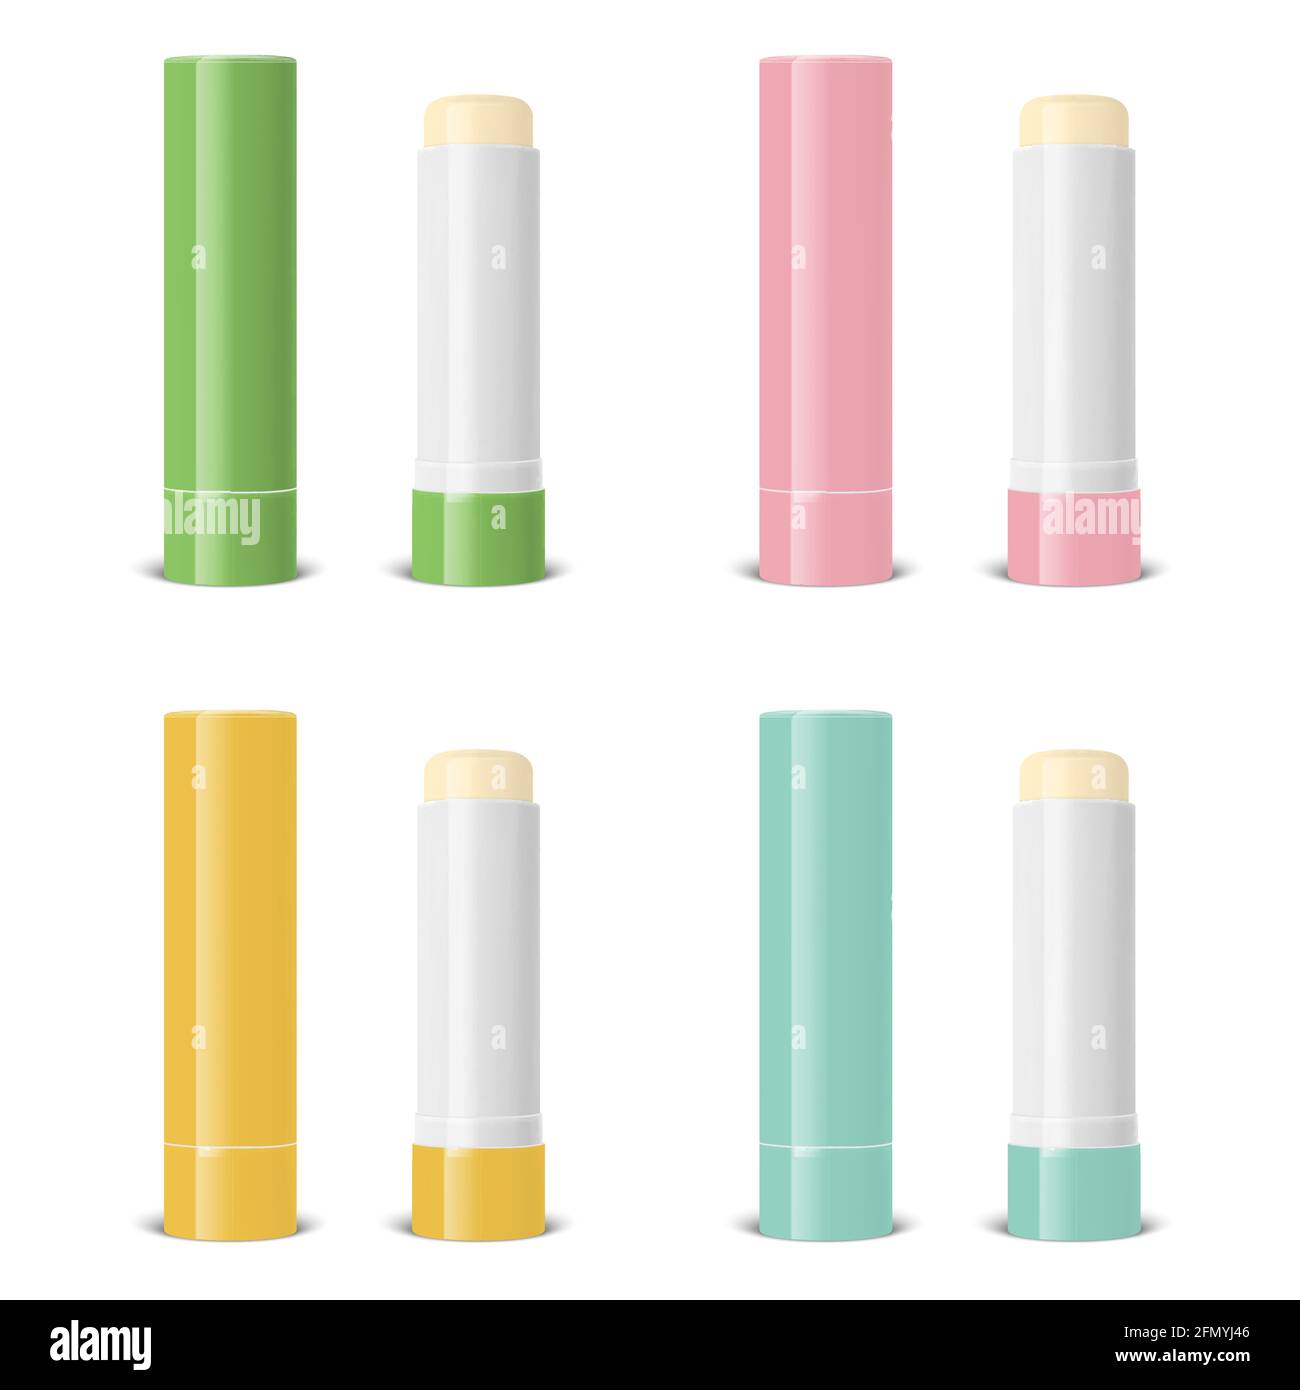 Vector Realistic 3d blanc ouvert, fermé lèvre Baume Stick, Hygienic Lipstick et Blister ensemble d'emballage isolé. Modèle de conception pour graphiques, vecteur Illustration de Vecteur